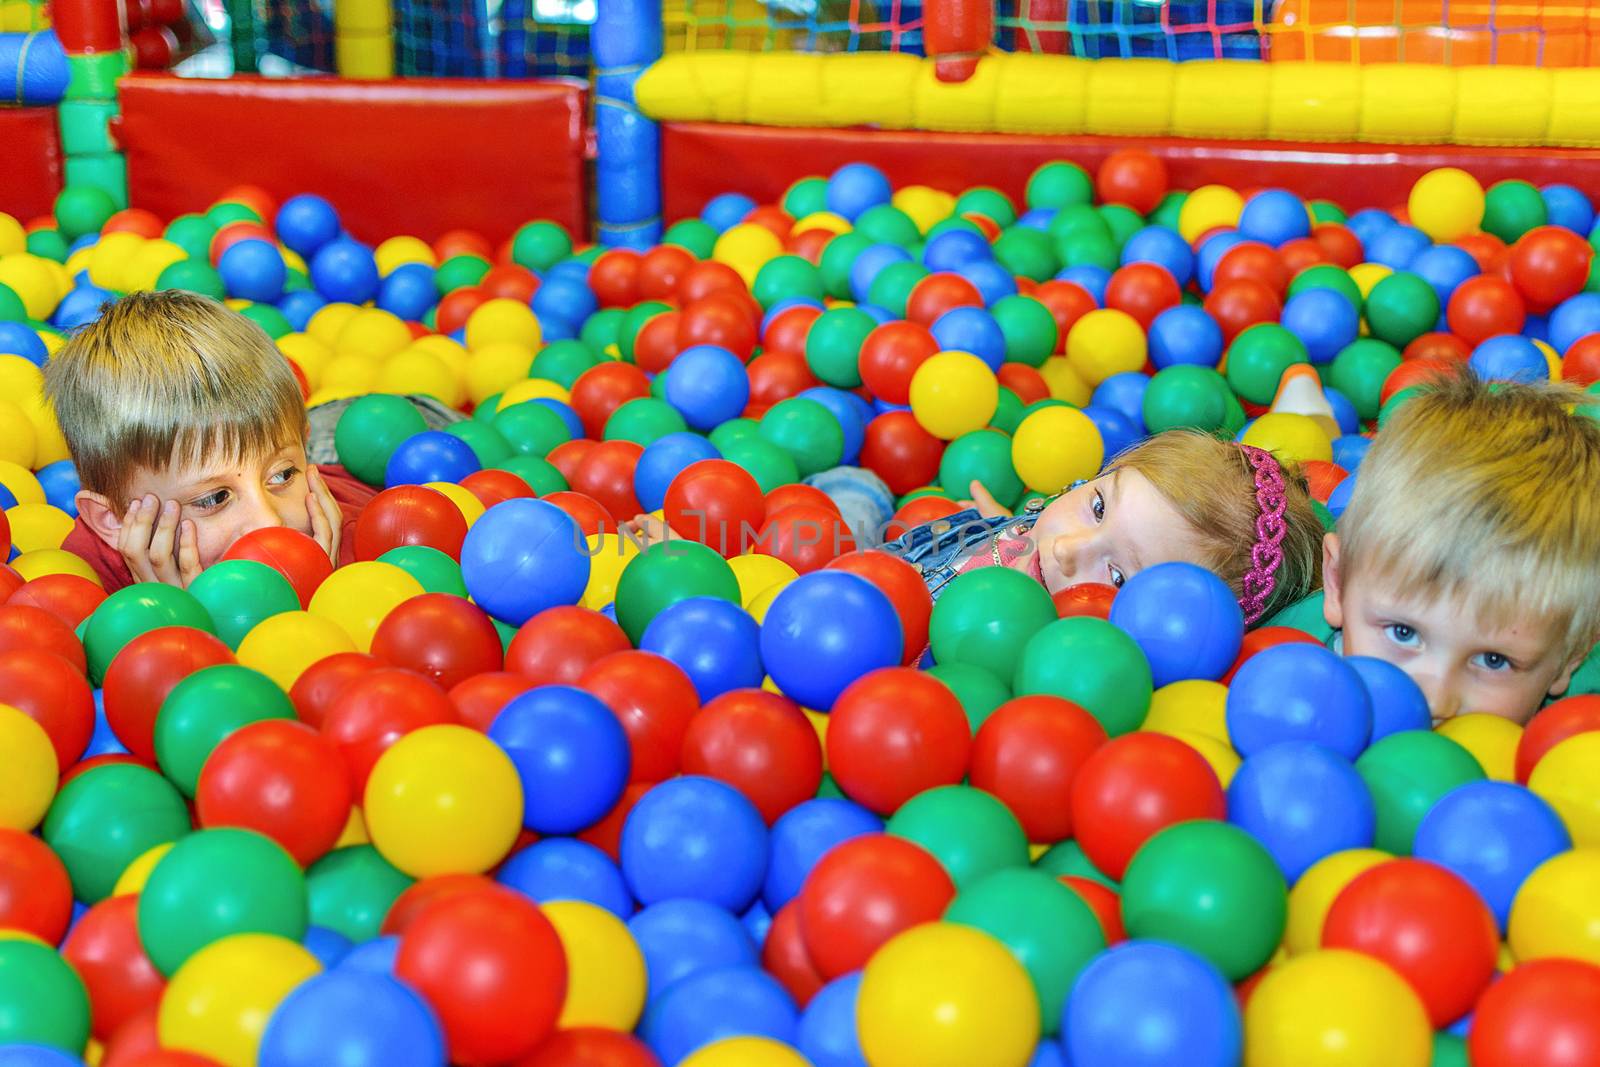  Cute kids in a sponge ball pool by wdnet_studio